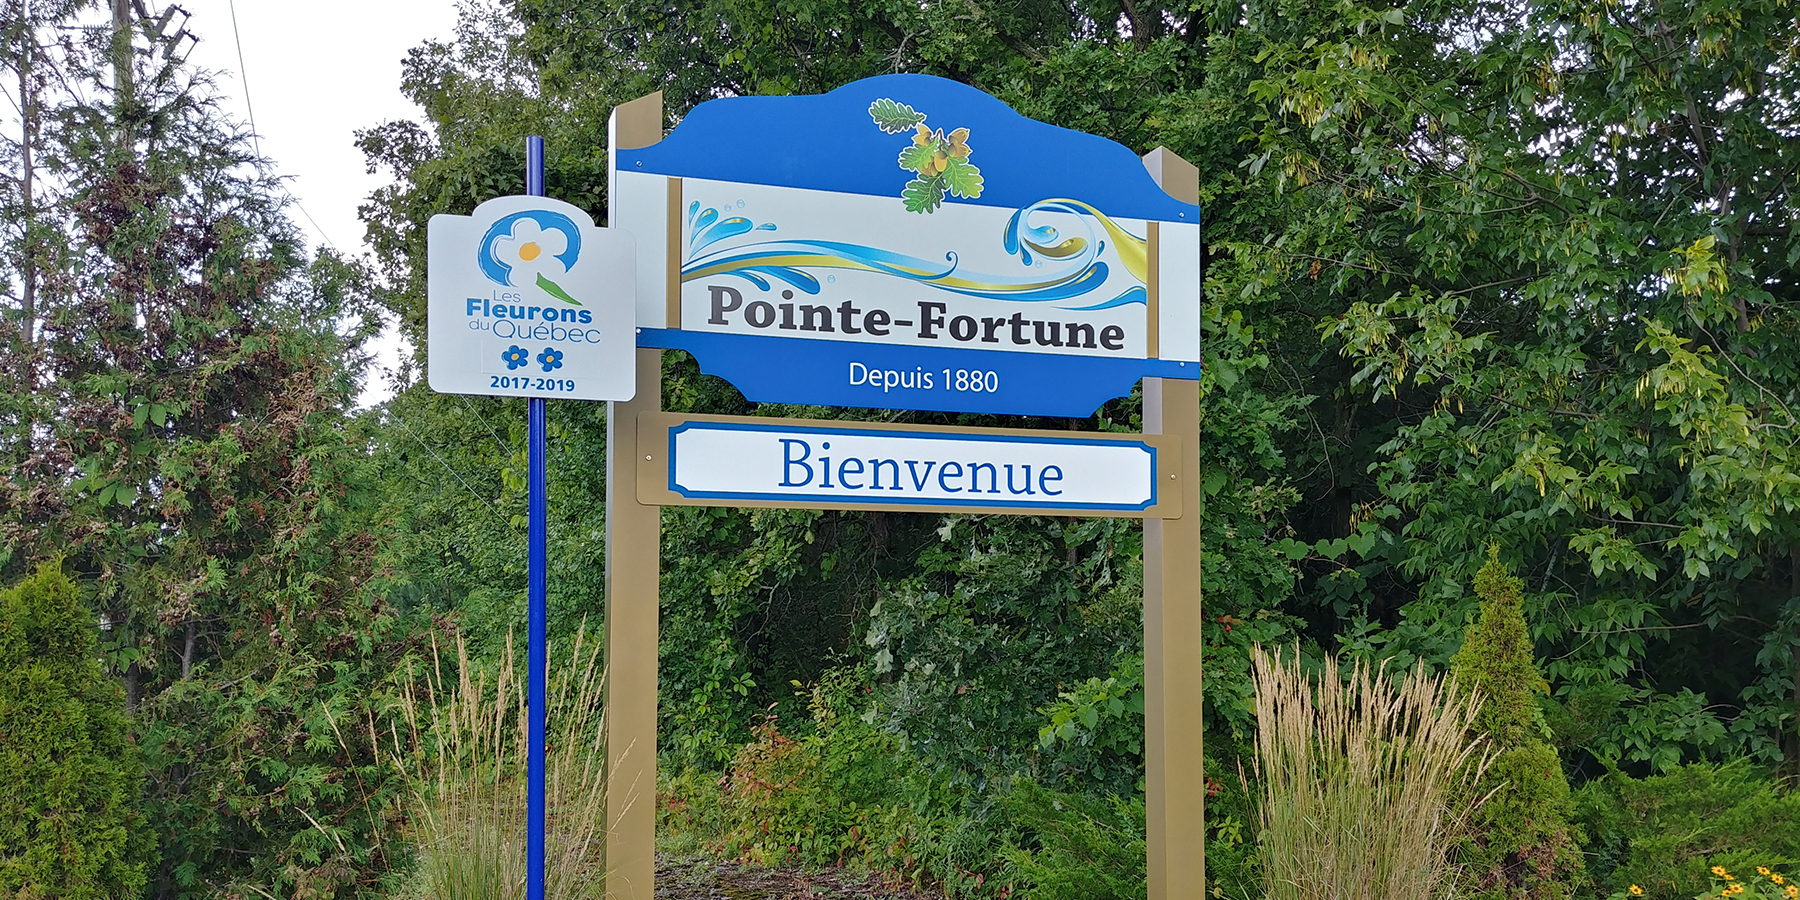 Suivi sur la possible contamination des sols à Pointe-Fortune.